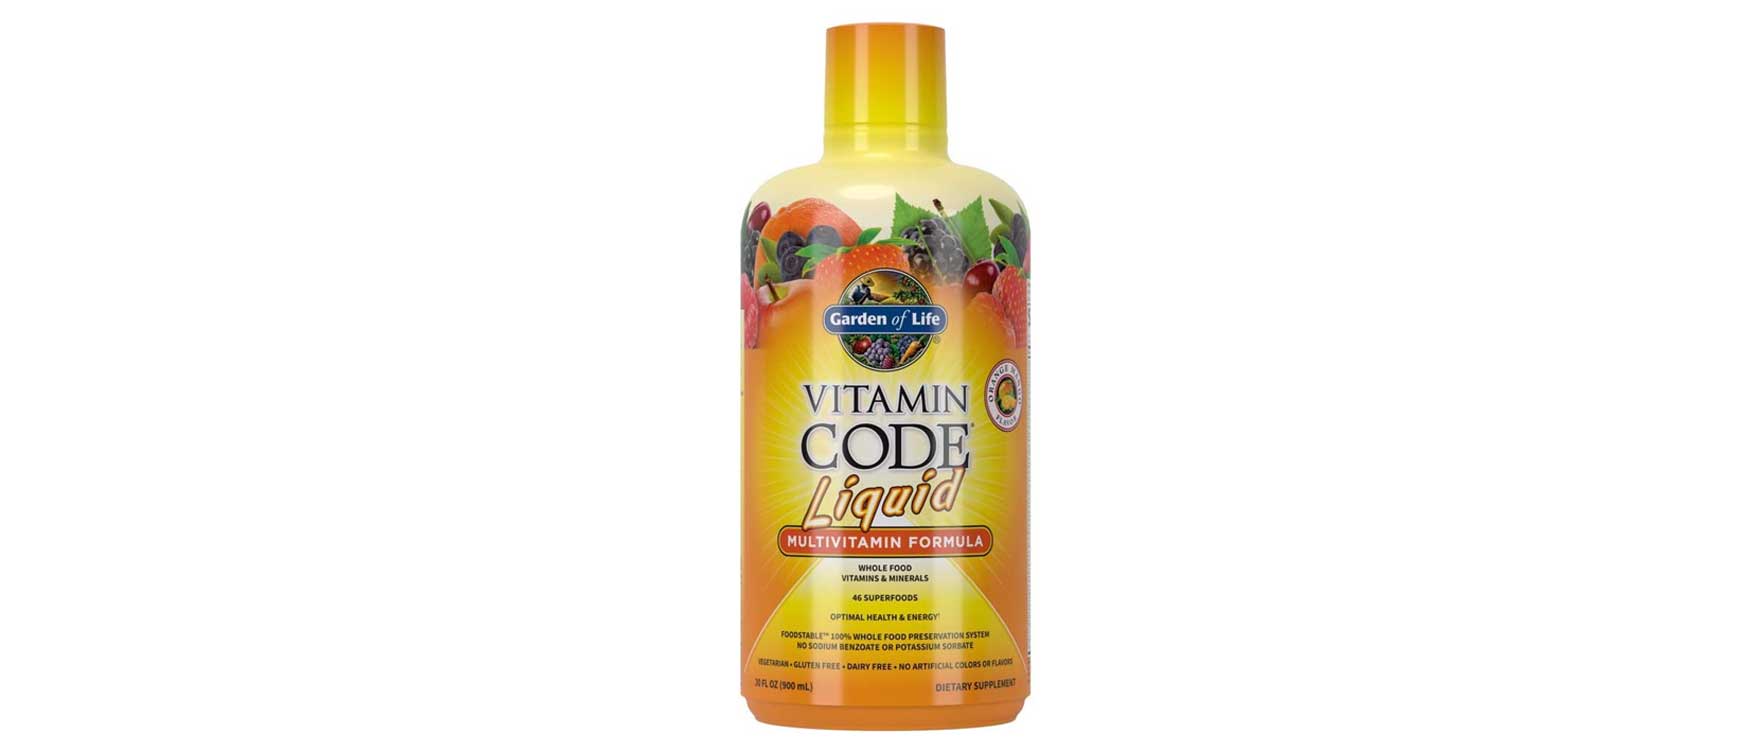 10. Garden of Life Vitamin Code Liquid